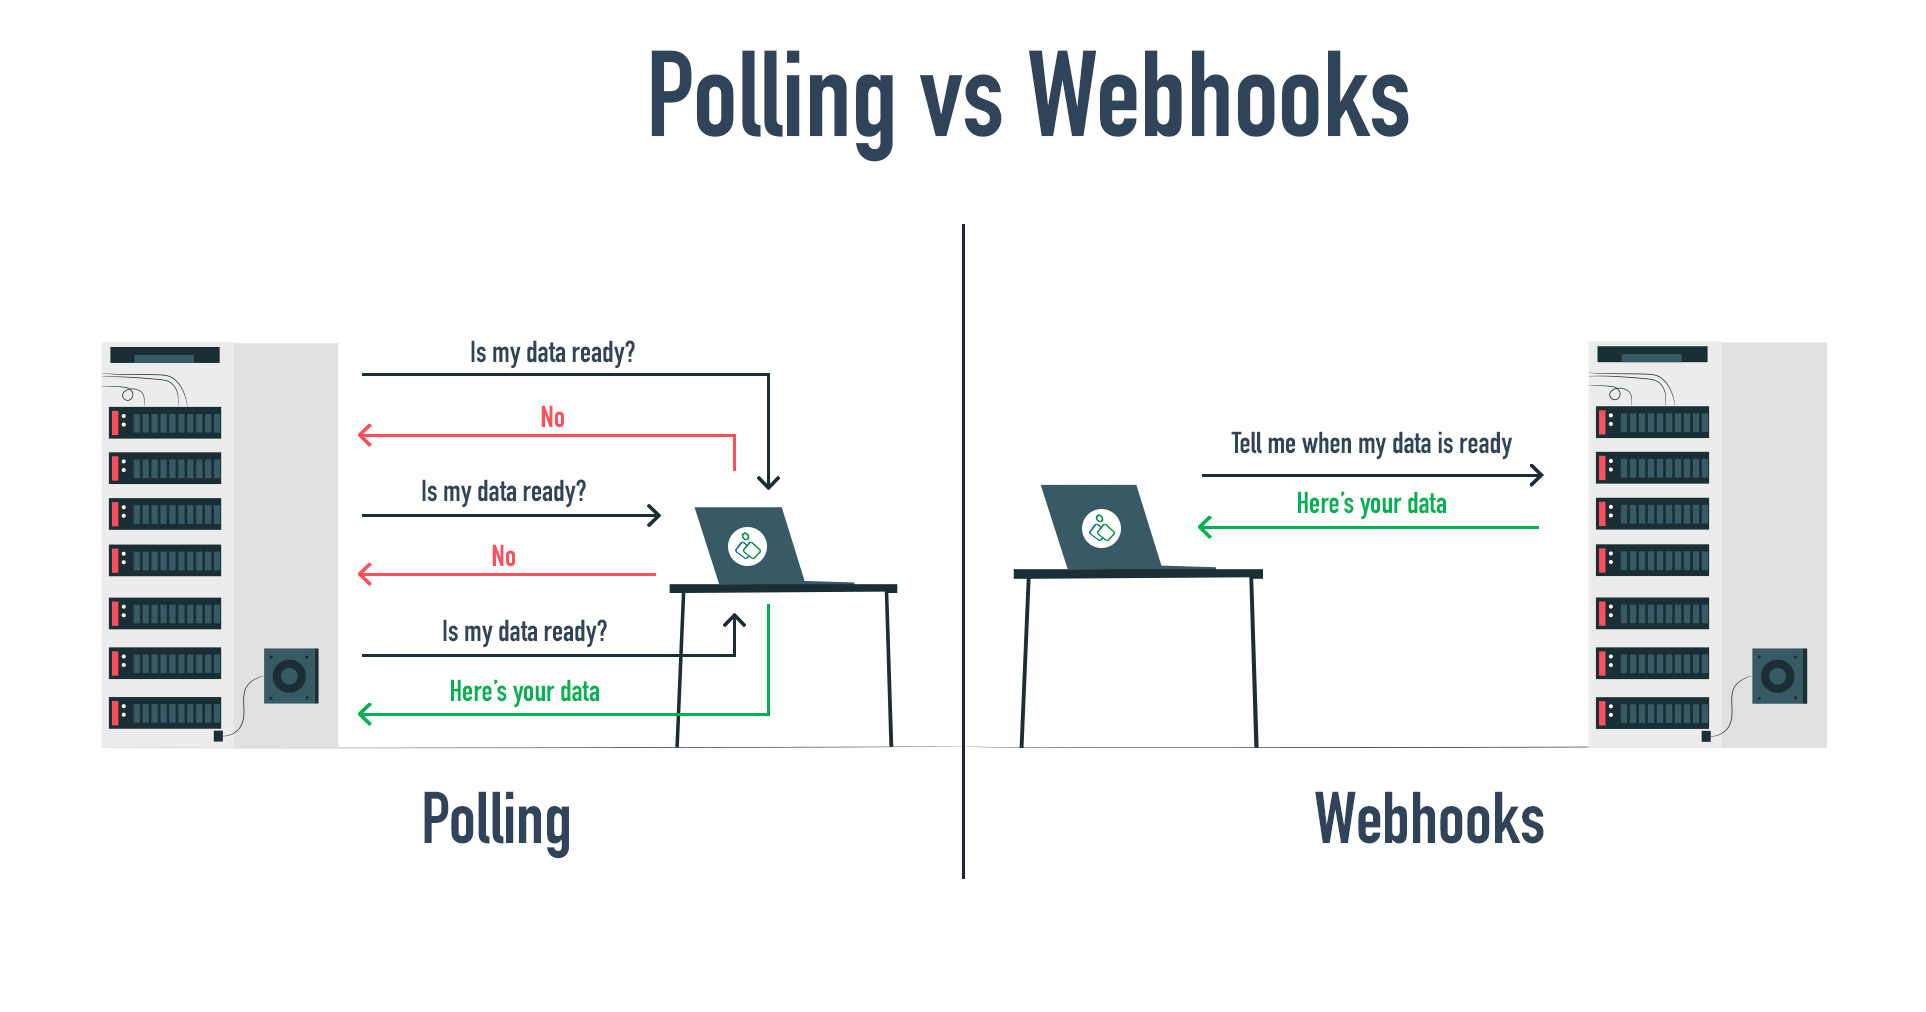 Che cos’è un webhook e come si usa?